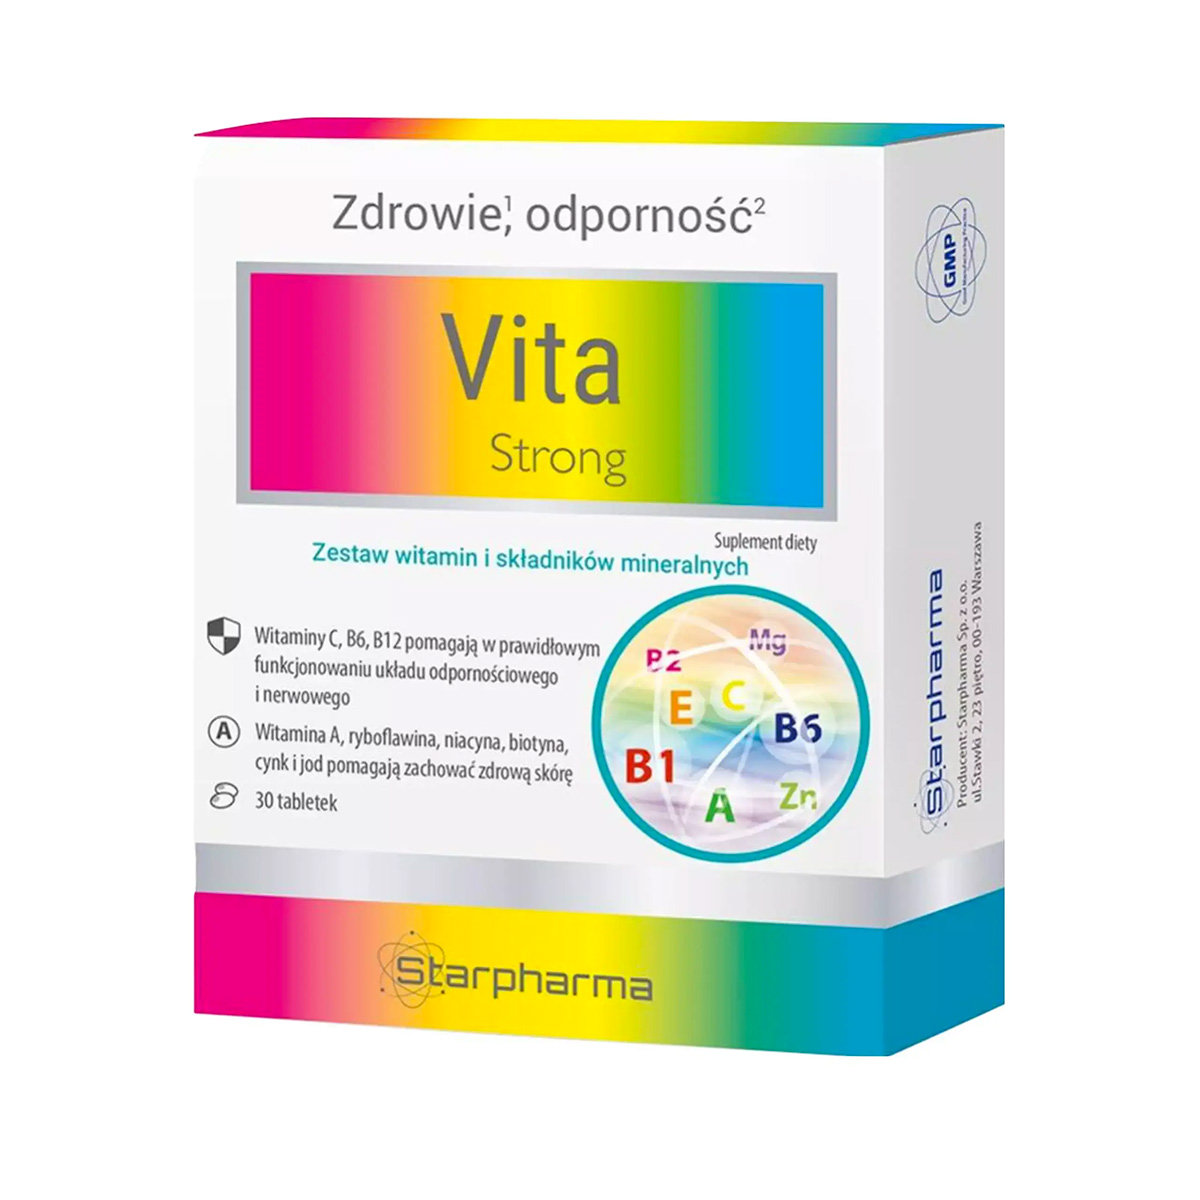 Фото - Вітаміни й мінерали Starpharma Vita Strong 30 tabletek 